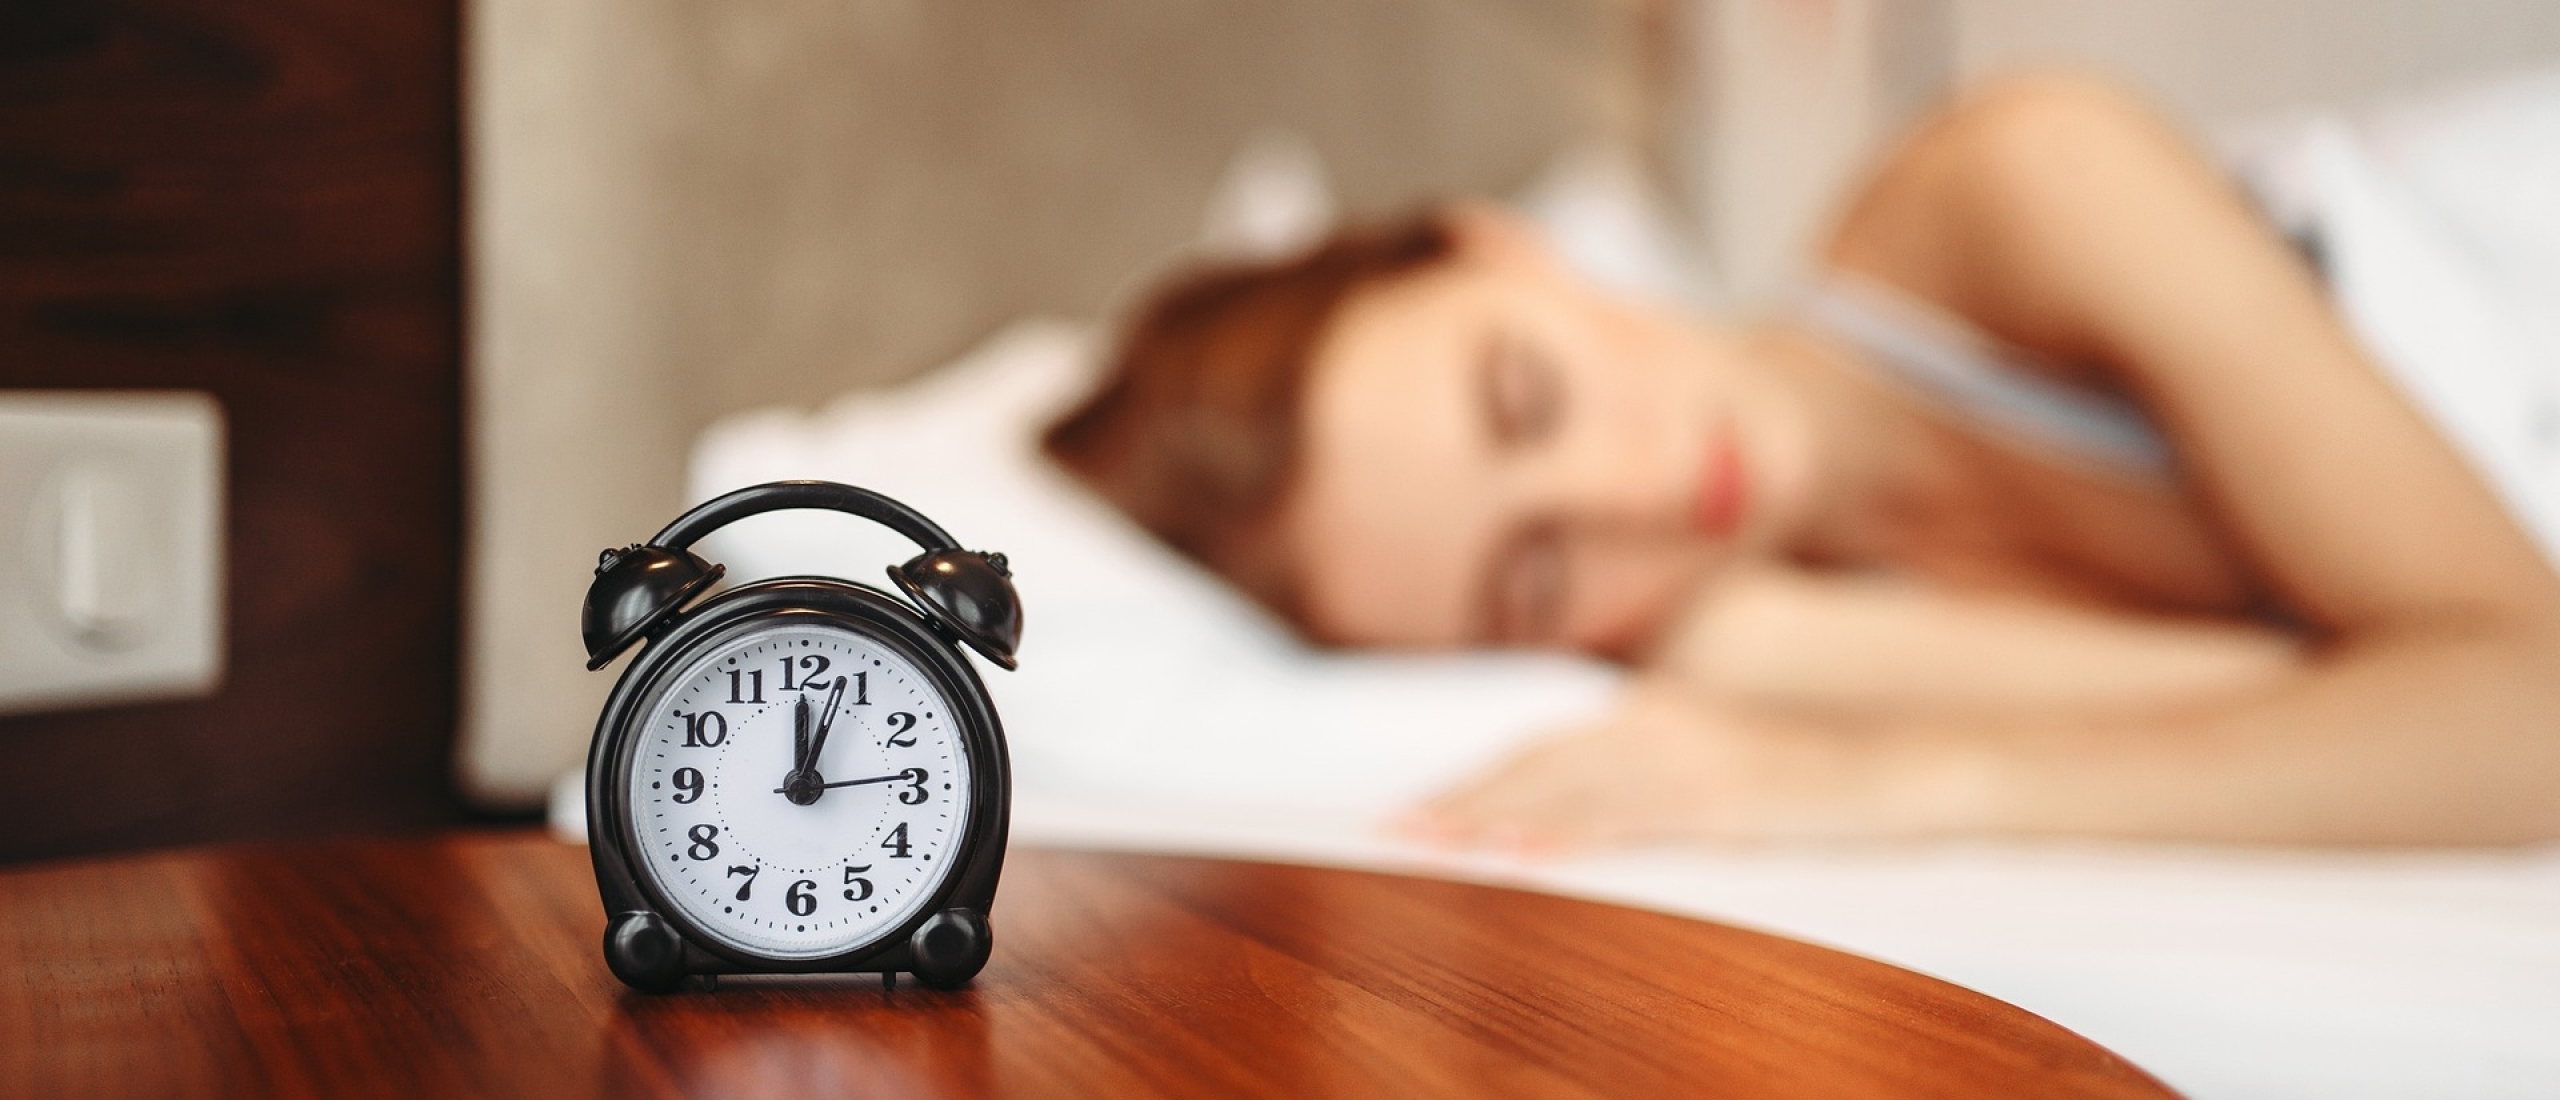 Slecht slapen door stress: dit kan je helpen! - Gastblog SlaapBalans